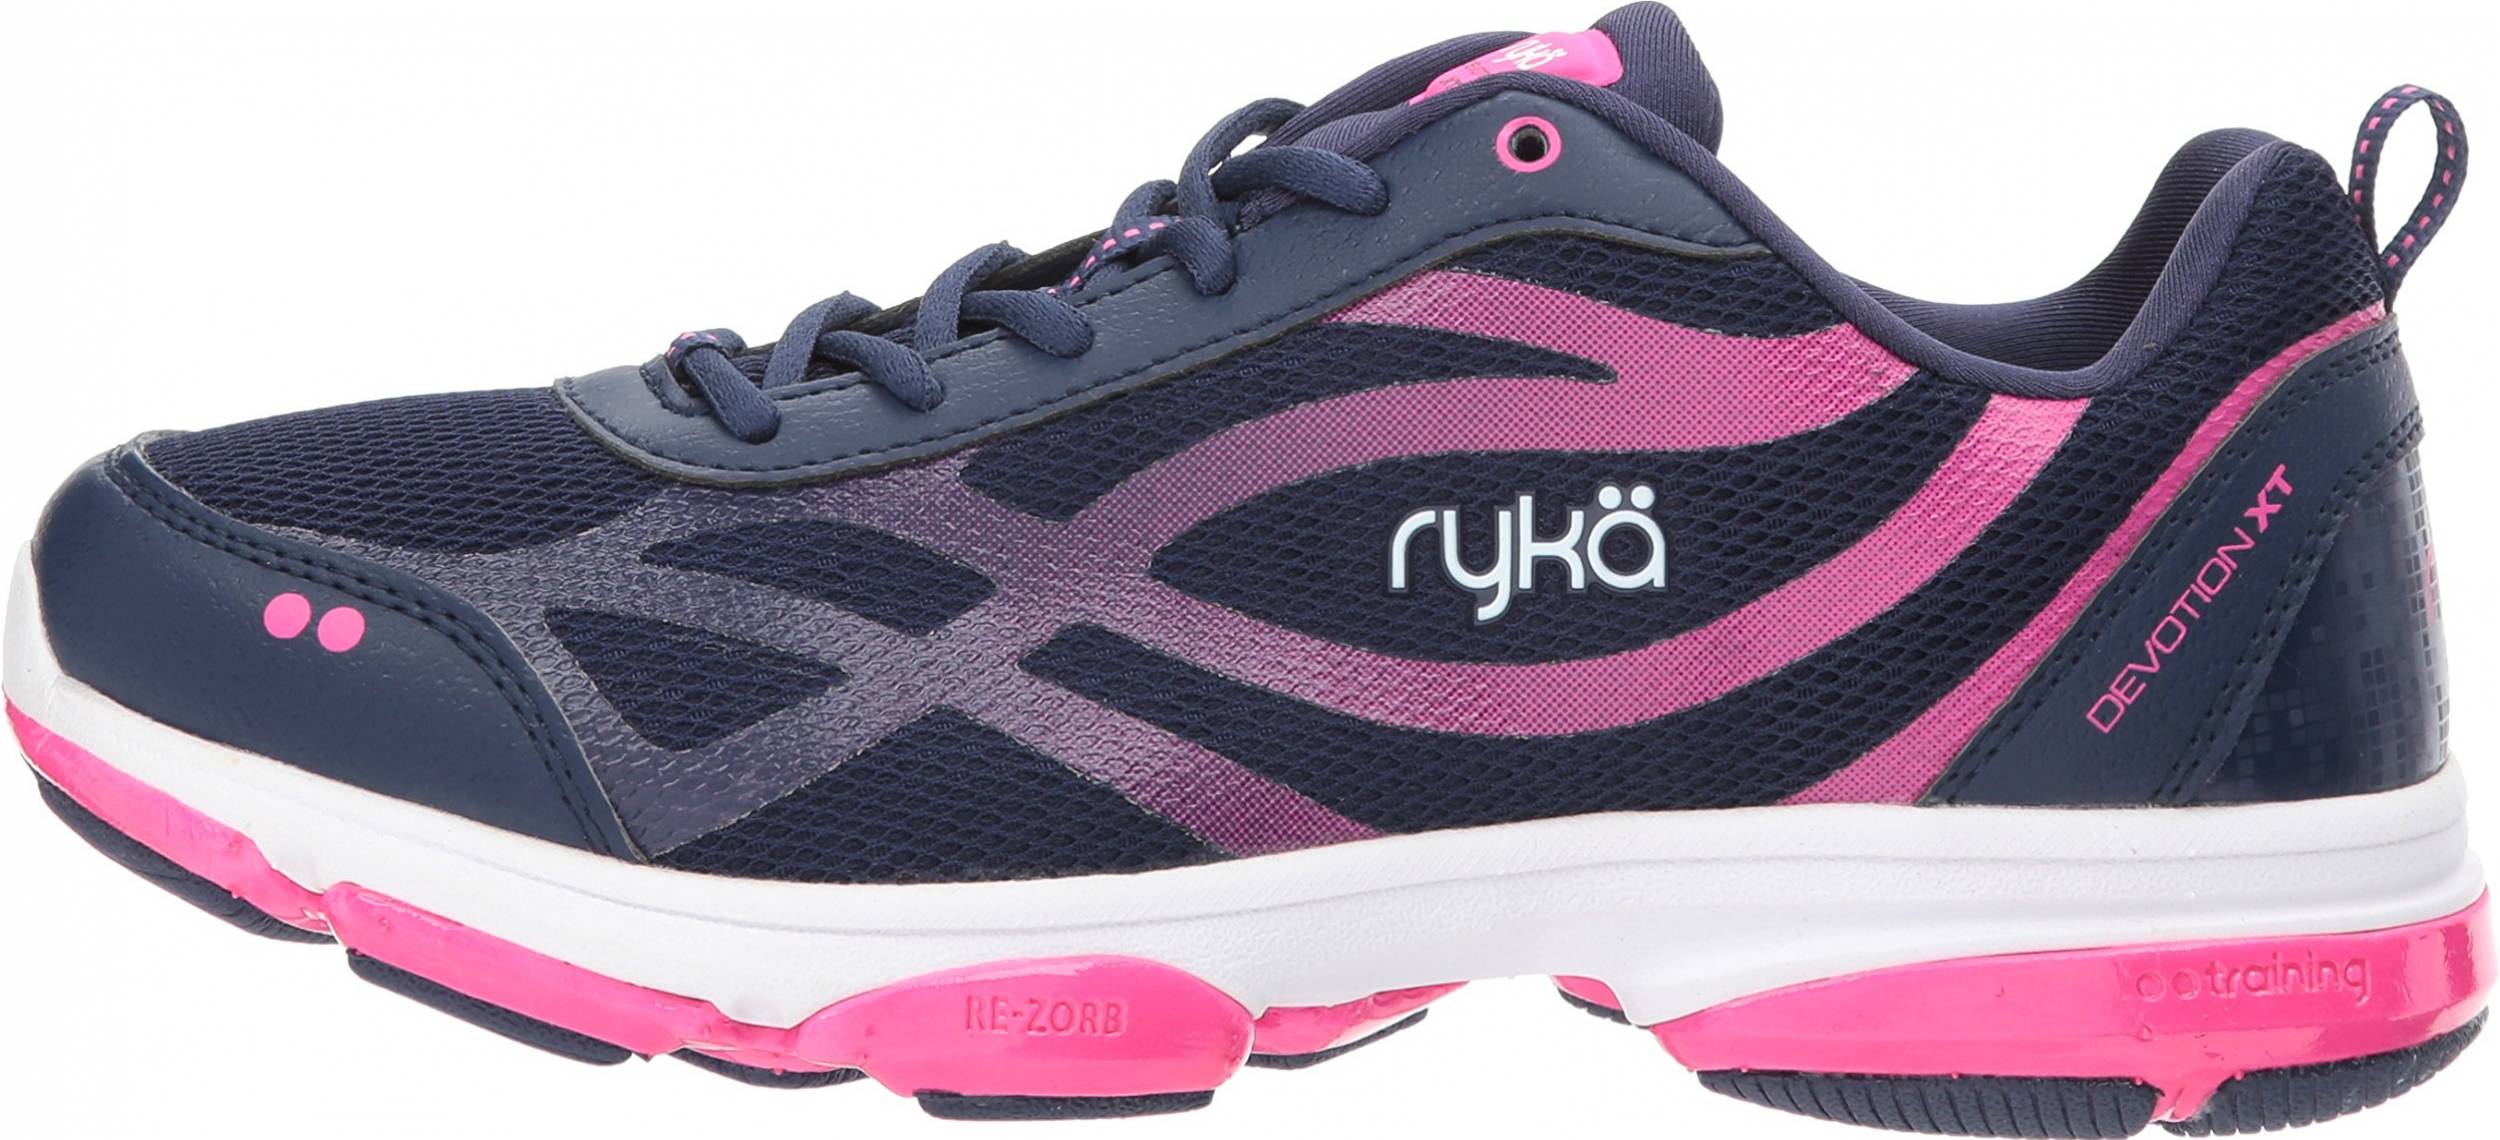 Ryka Women's Devotion XT 2 Training Shoe